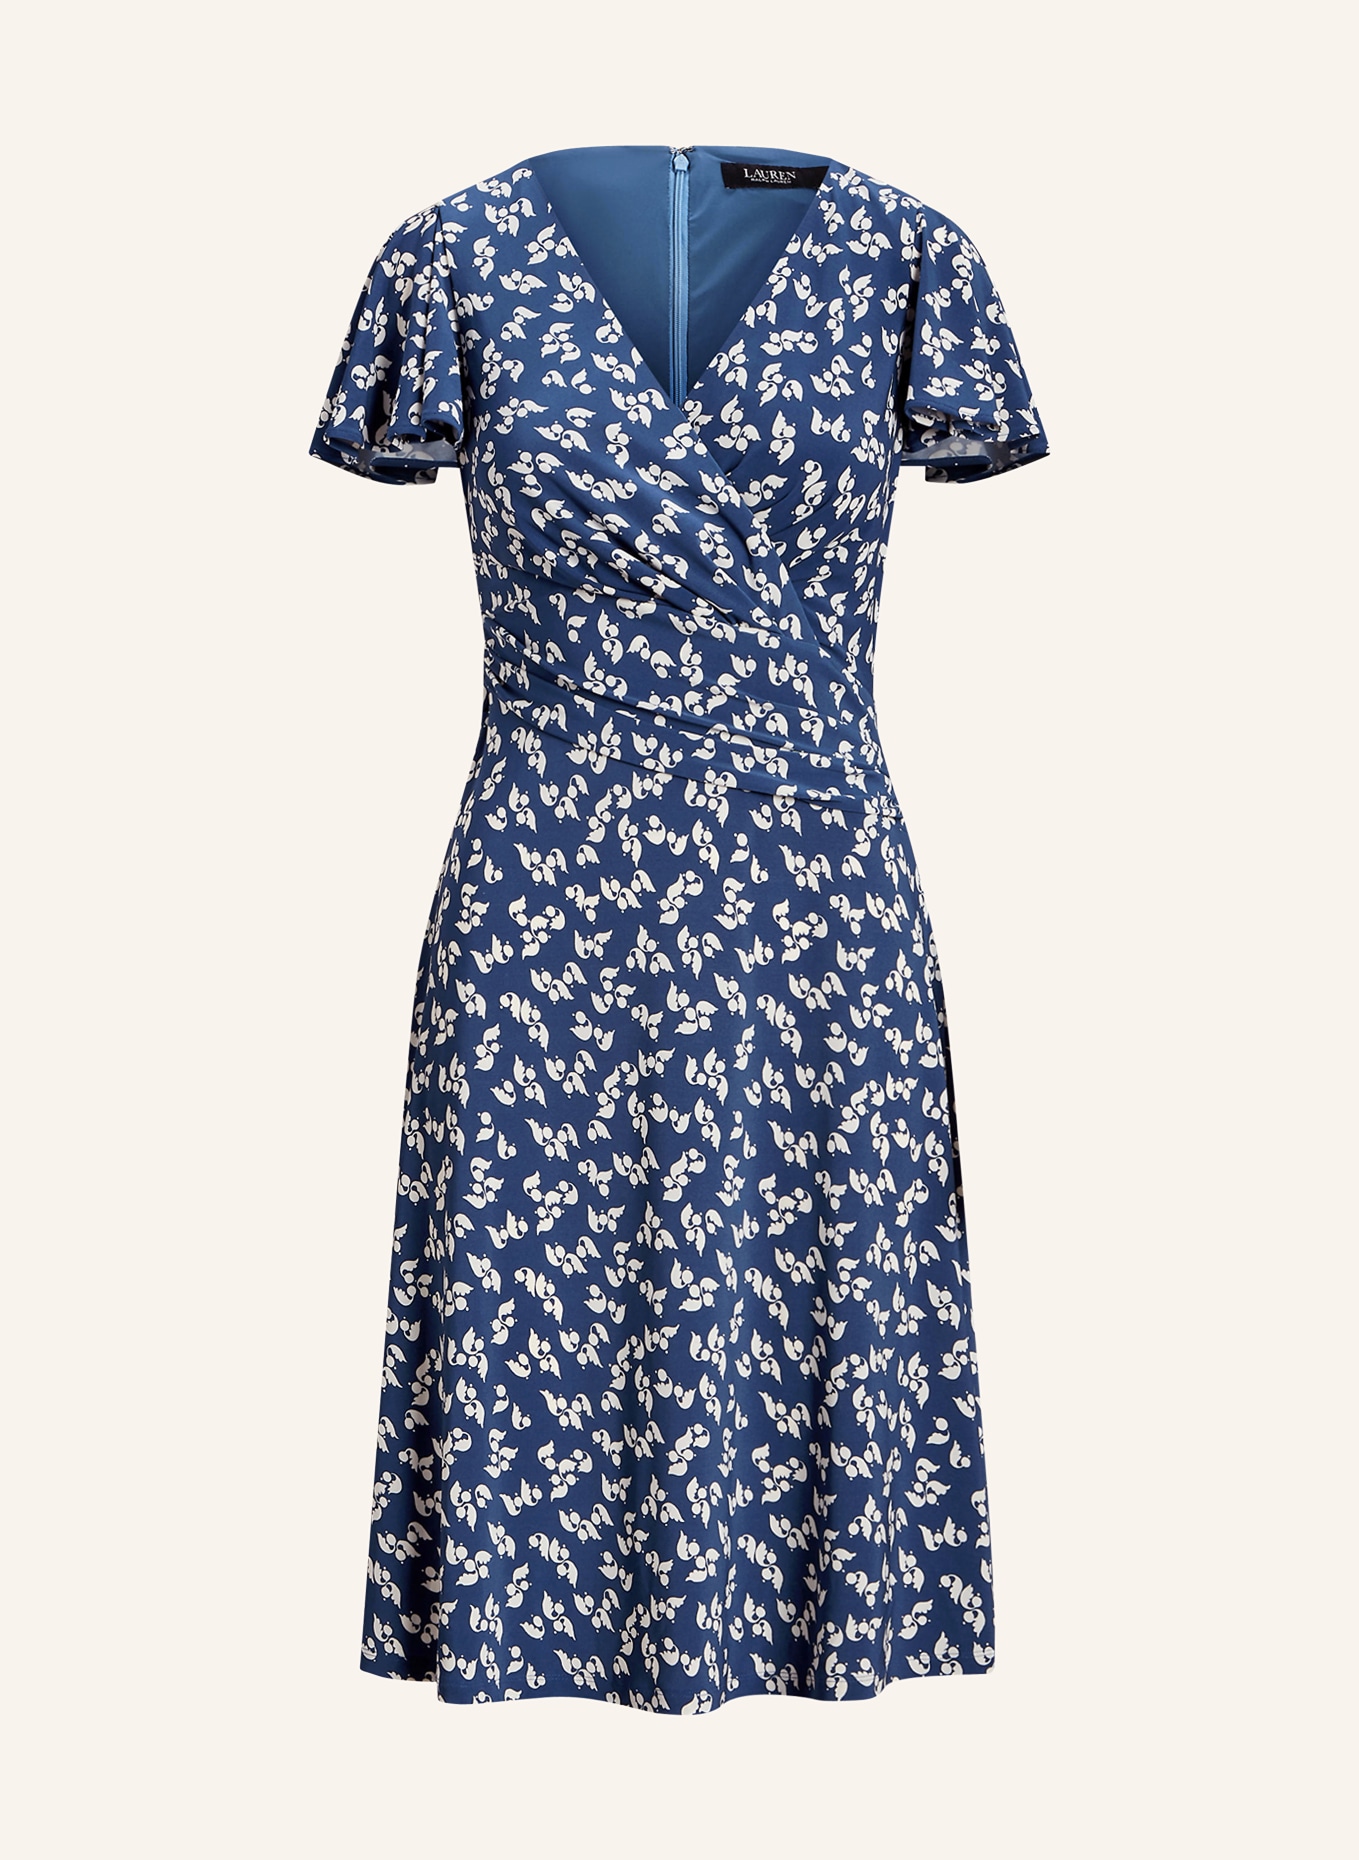 LAUREN RALPH LAUREN Jersey dress, Color: BLUE/ CREAM (Image 1)